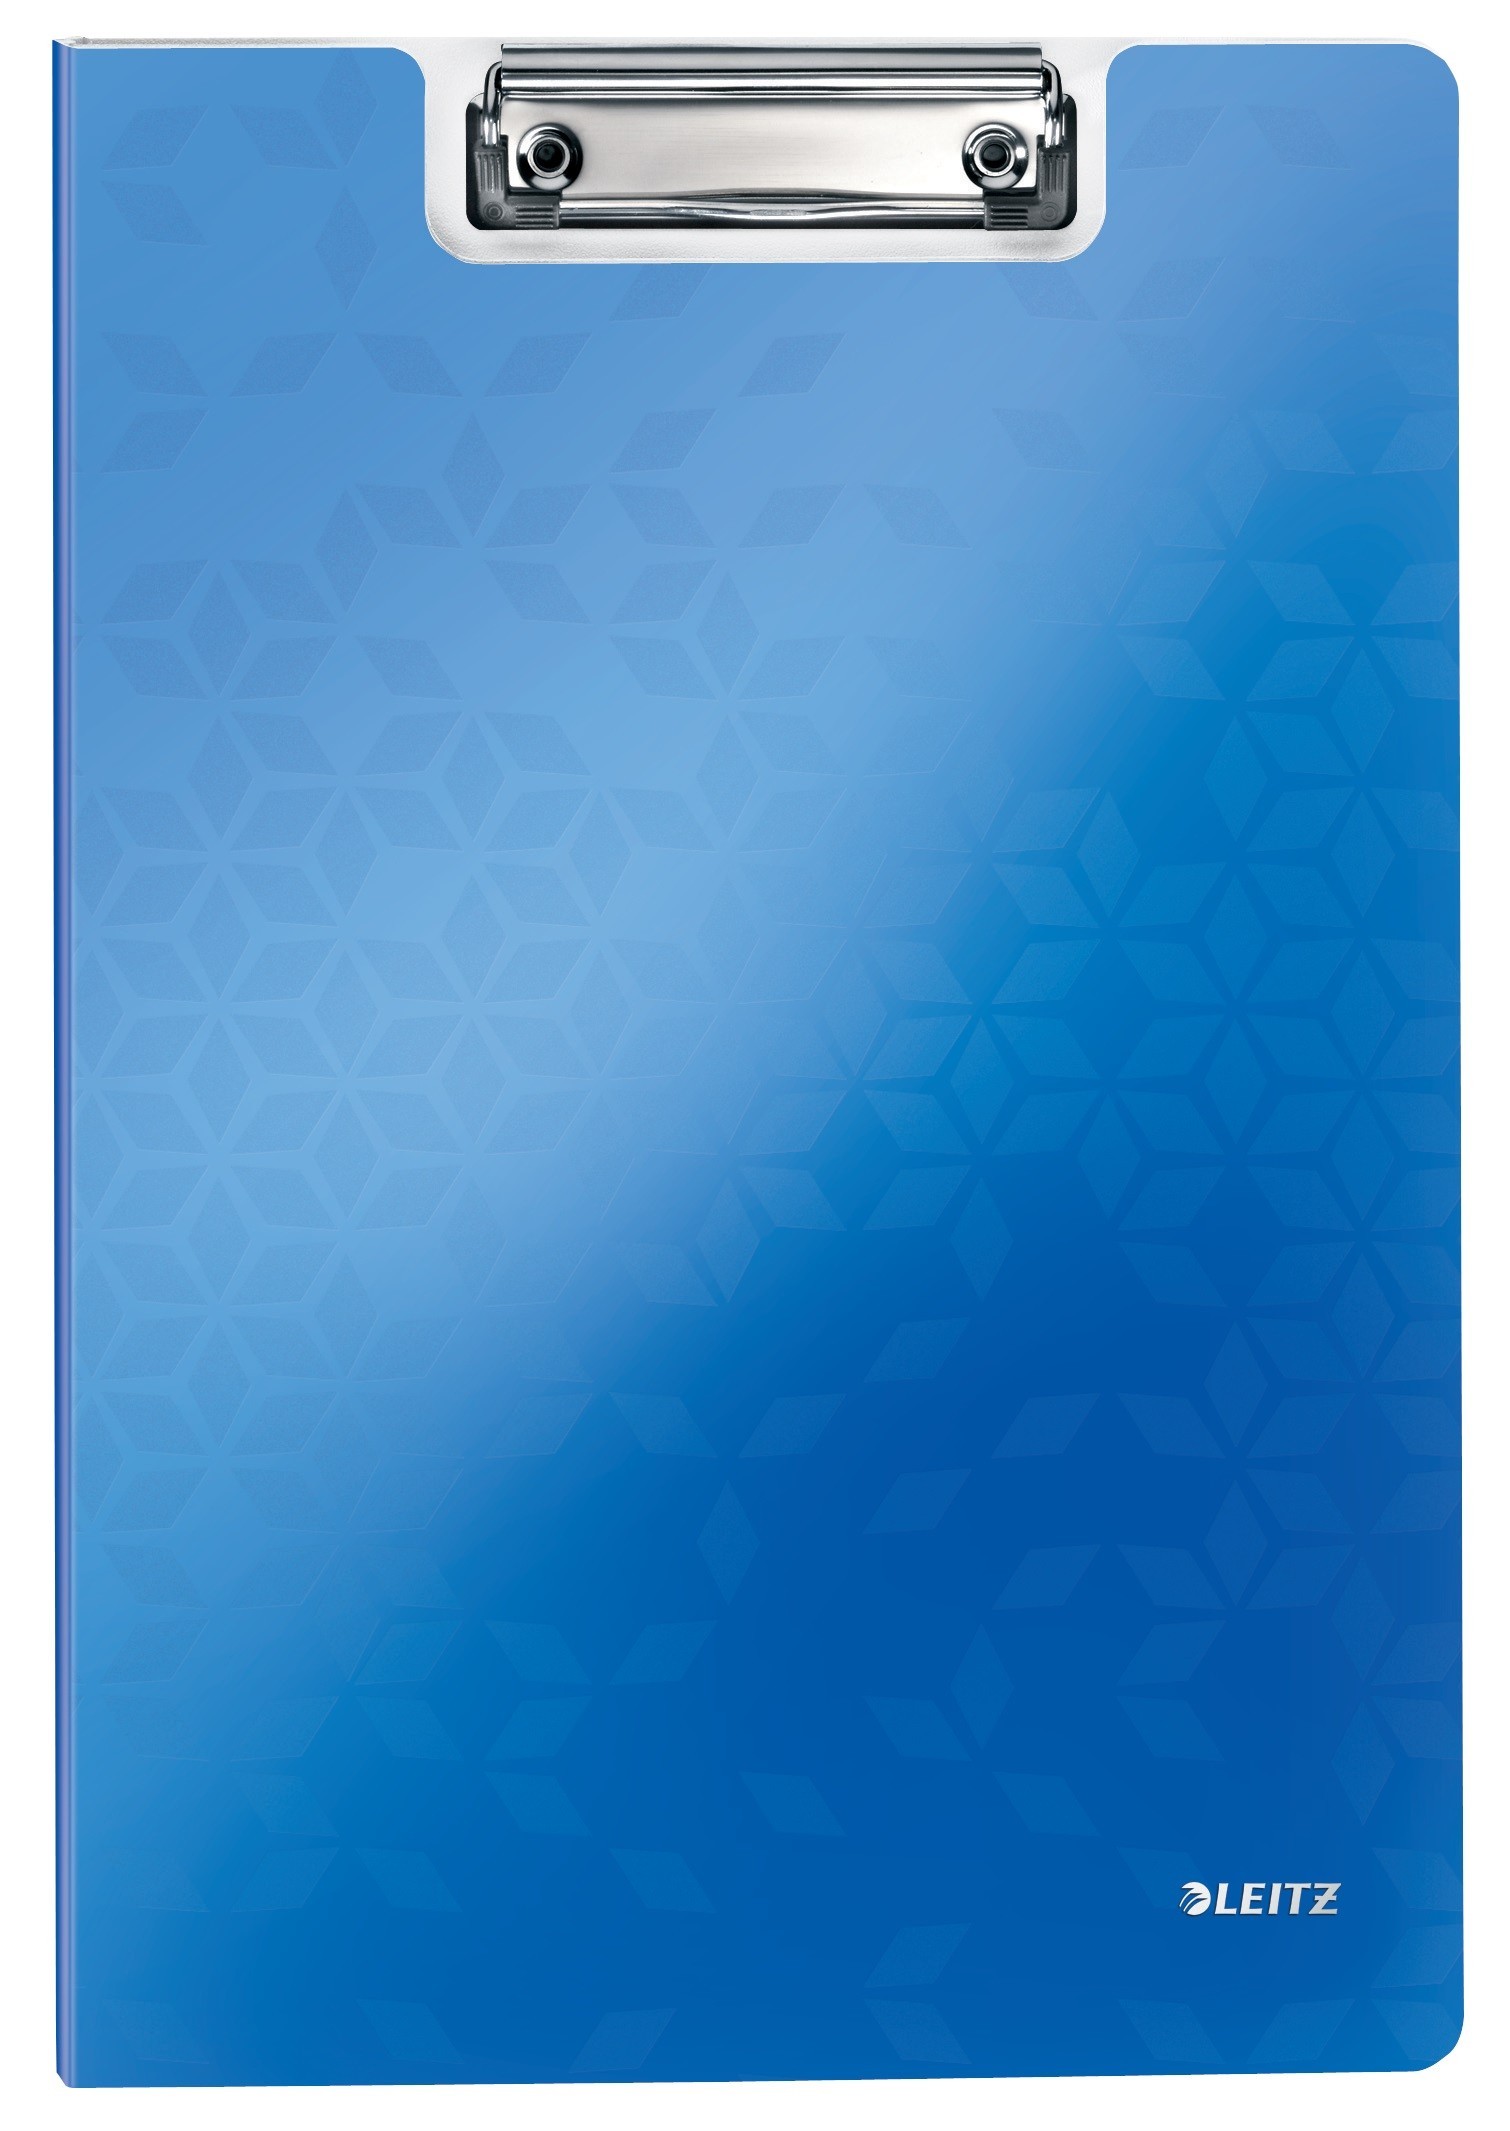 Clipboard dublu LEITZ Wow, polyfoam - albastru metalizat